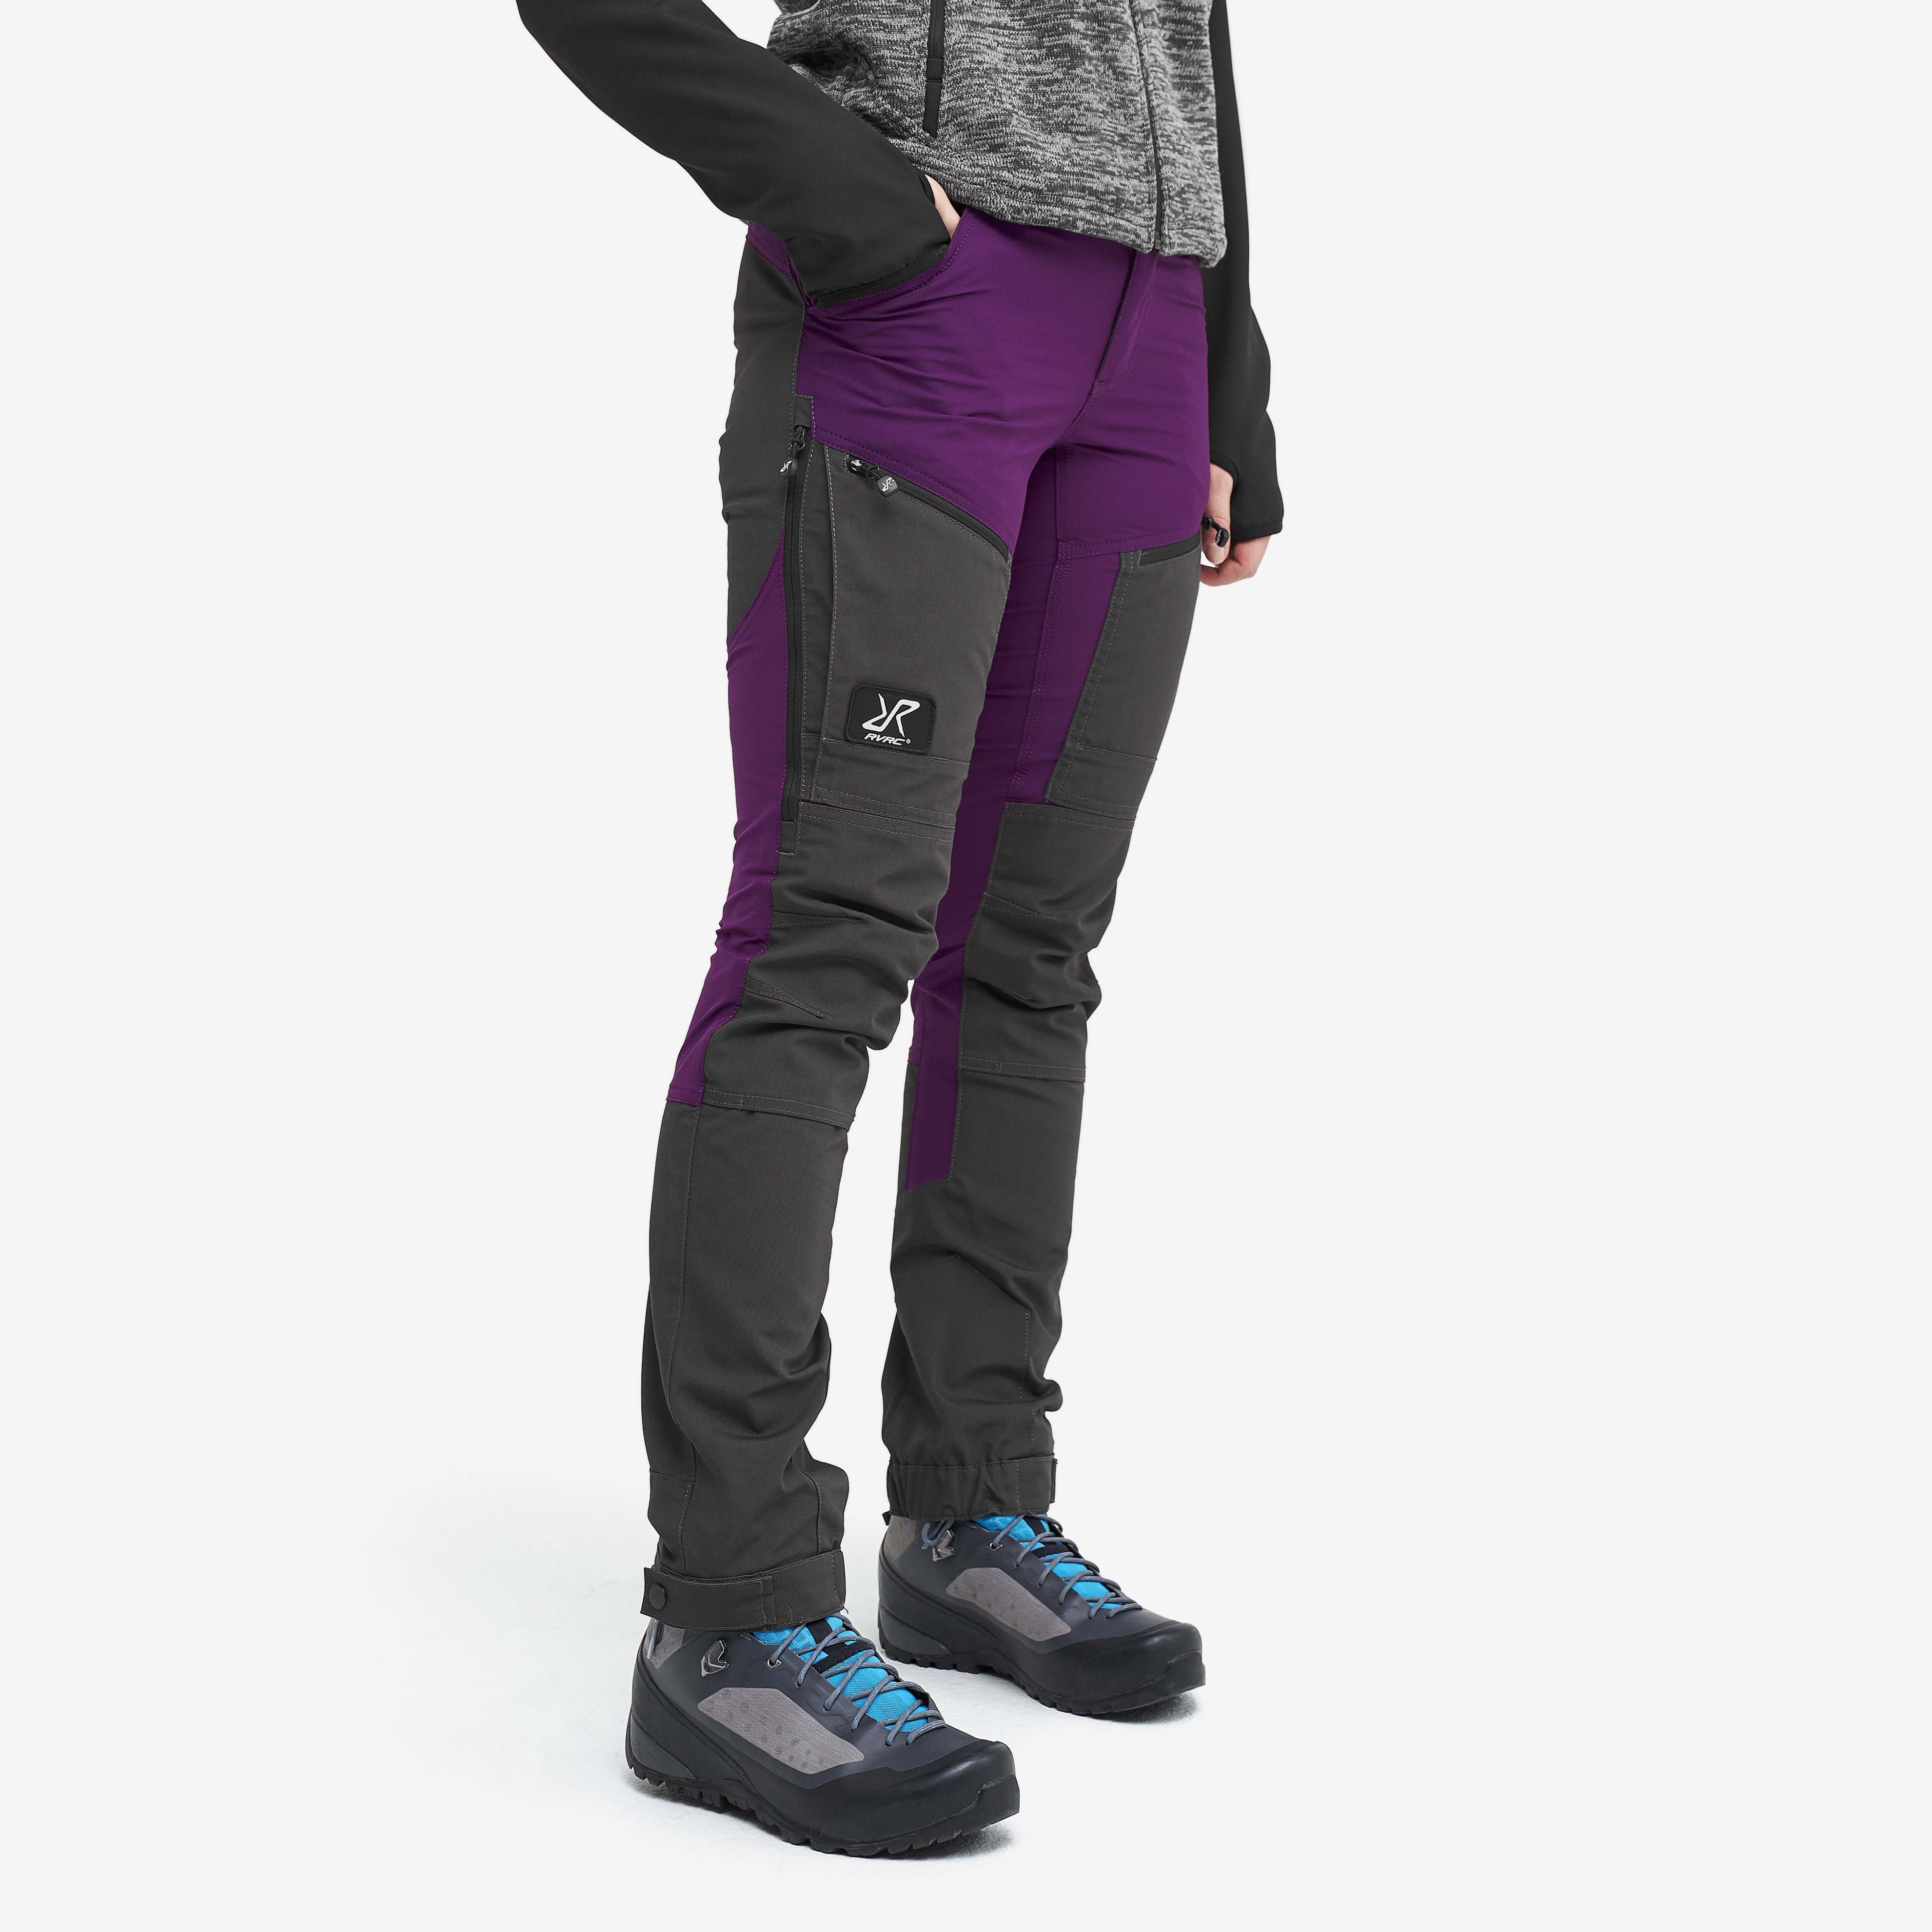 RVRC GP Pro spodnie trekkingowe damskie purpurowy